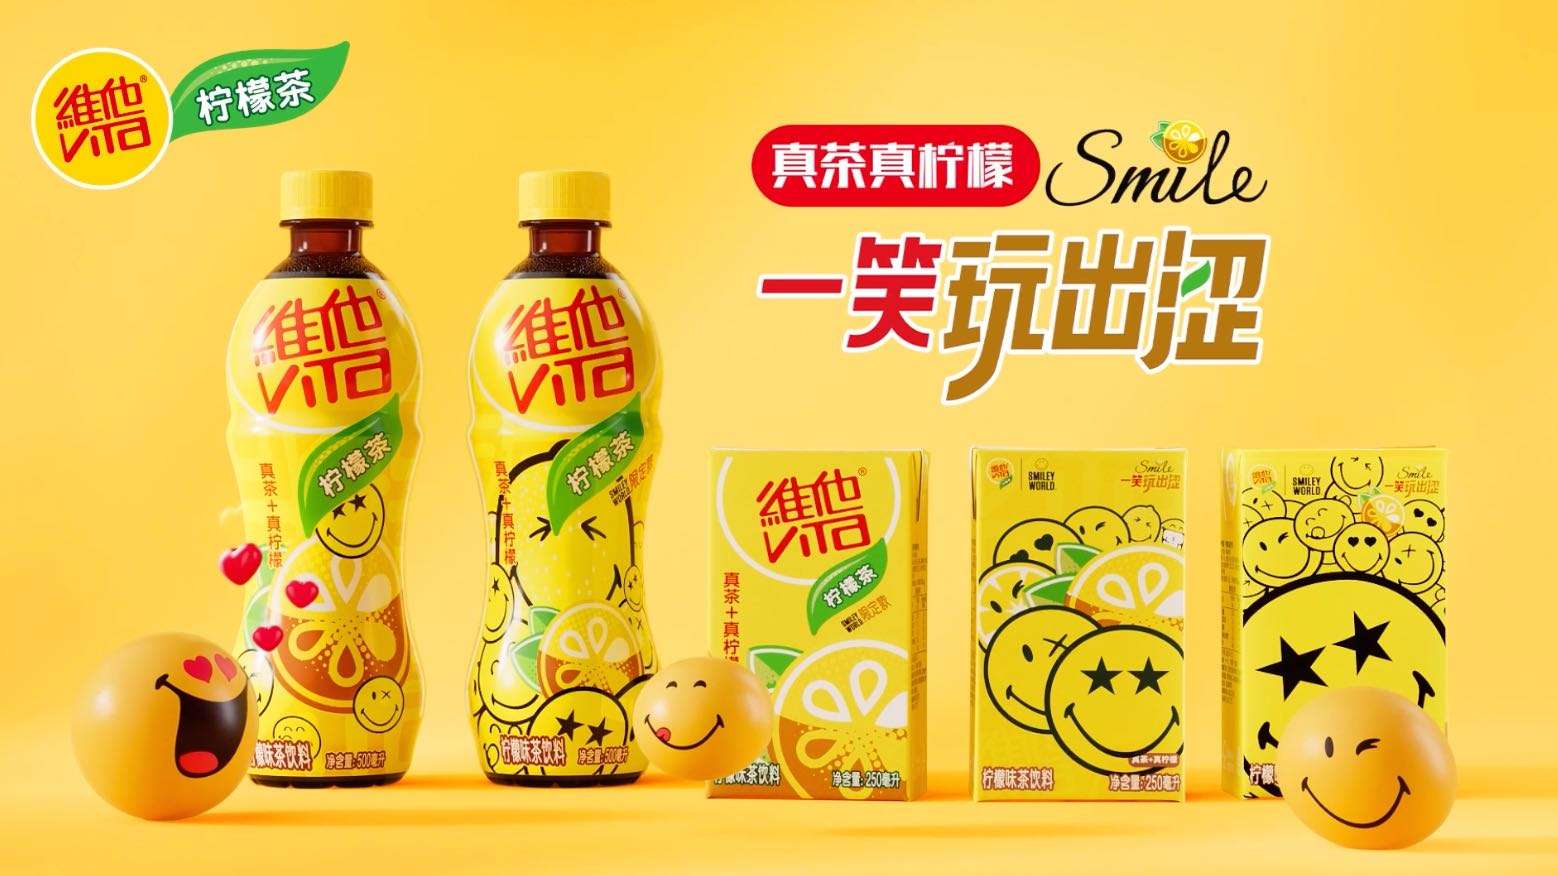 维他柠檬茶&Smile联名视频